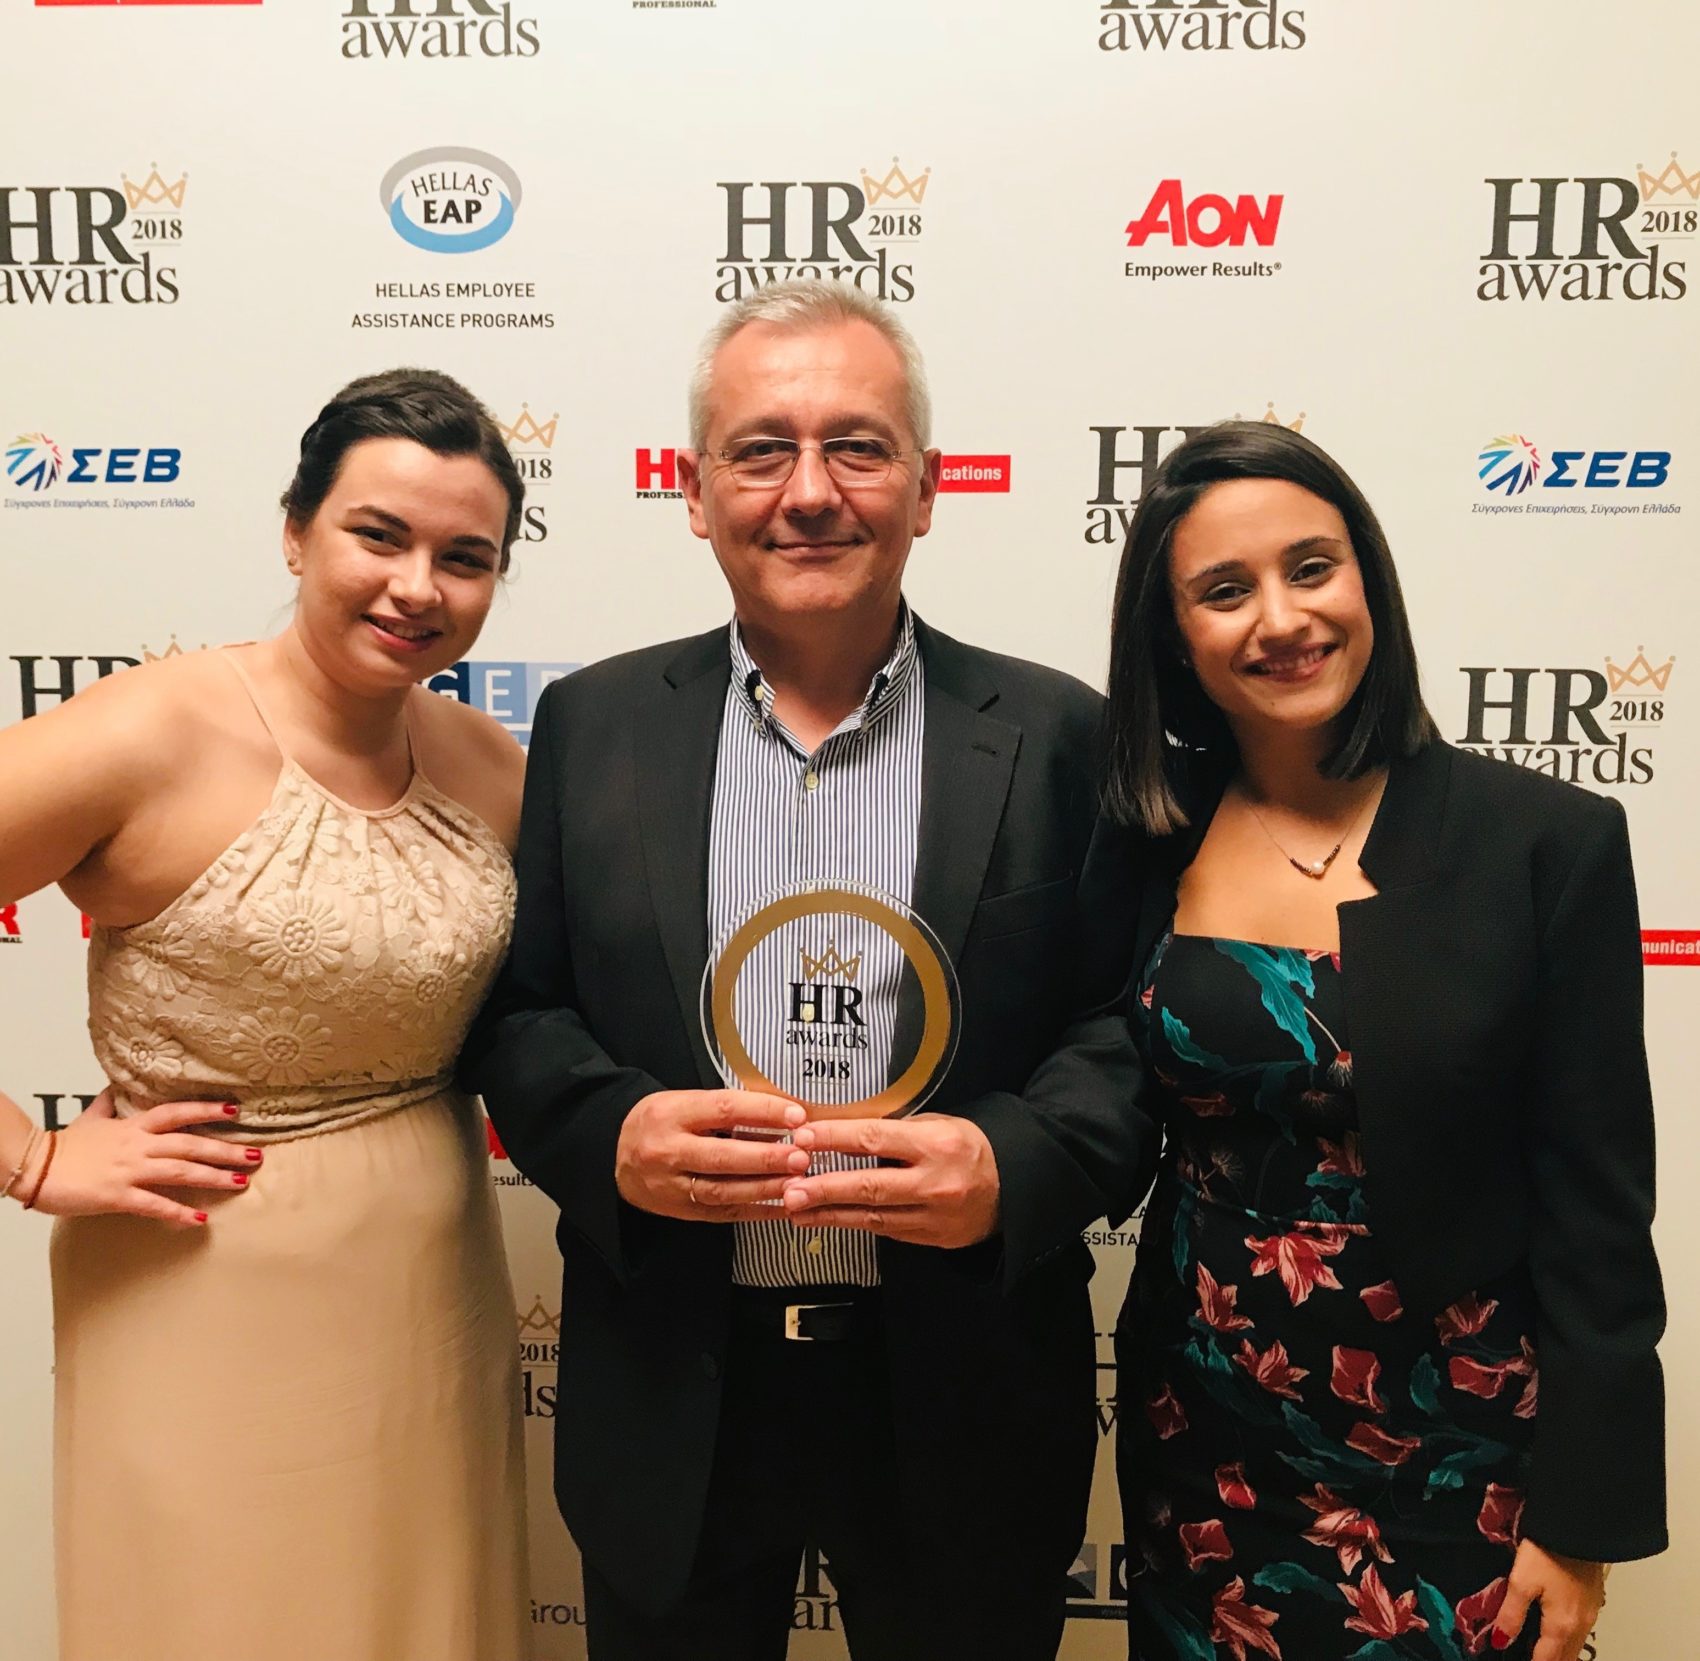 Η AbbVie κατέλαβε την πρώτη θέση στα HR Awards 2018